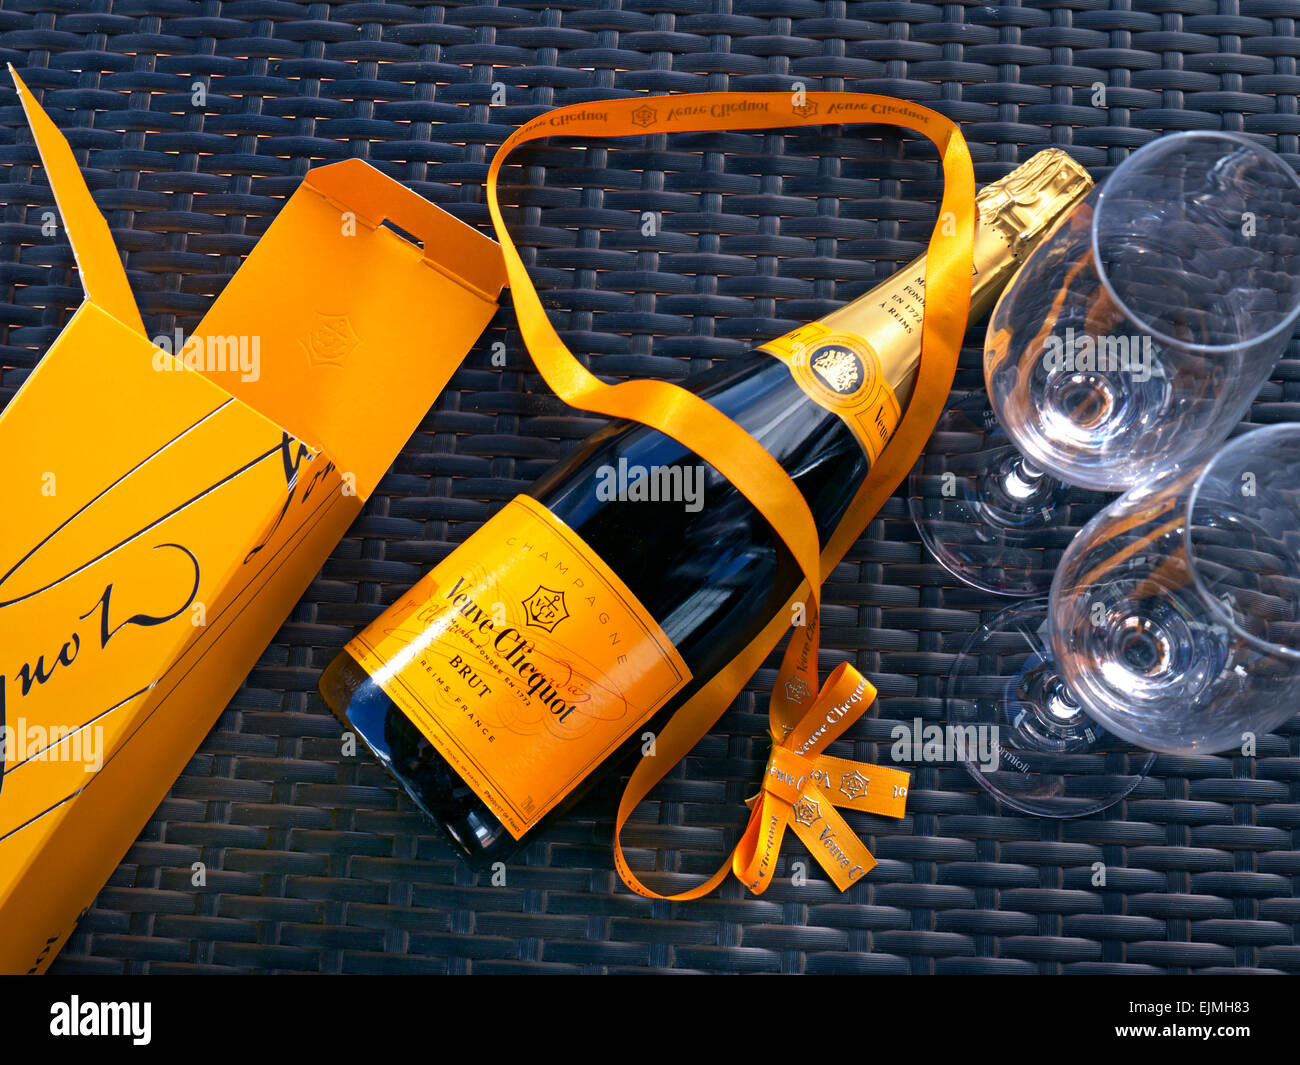 Flasche Veuve Clicquot Luxus Champagner Geschenkbox und Gläser auf sonnigen outdoor alfresco Wicker Tischfläche Stockfoto